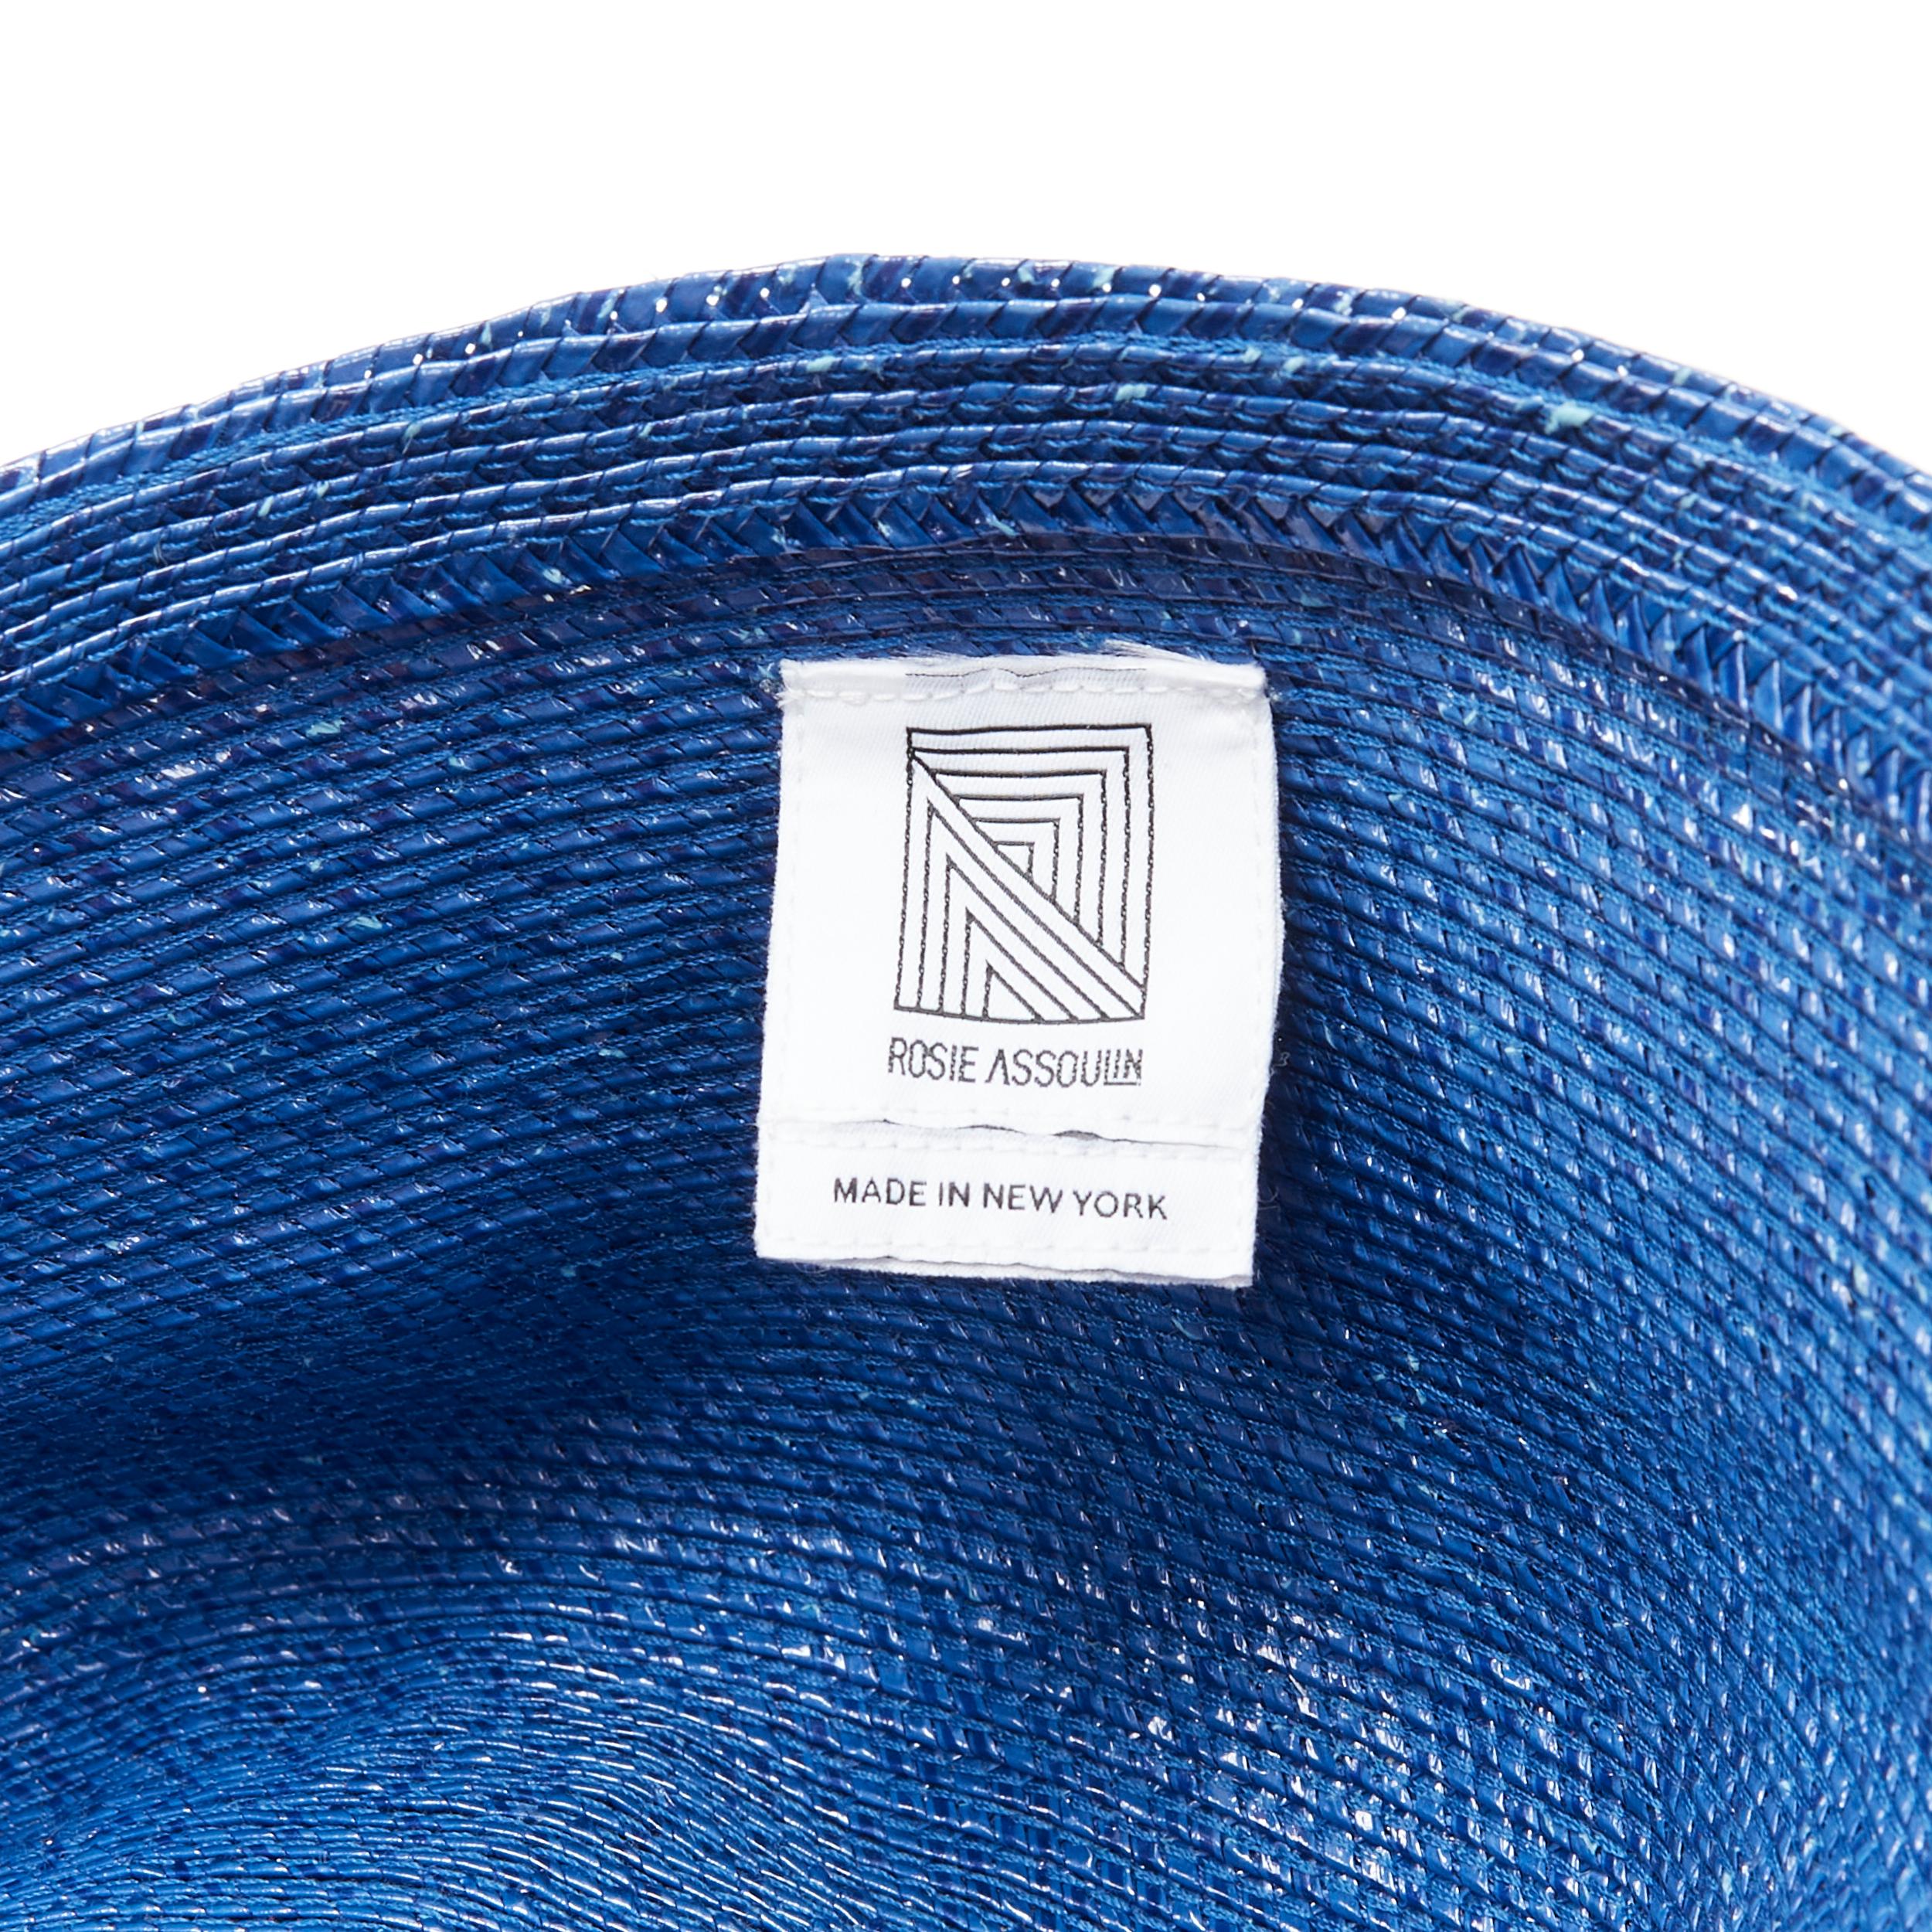 new ROSIE ASSOULIN Jug sculptural pink blue flared raffia woven basket bag For Sale 7